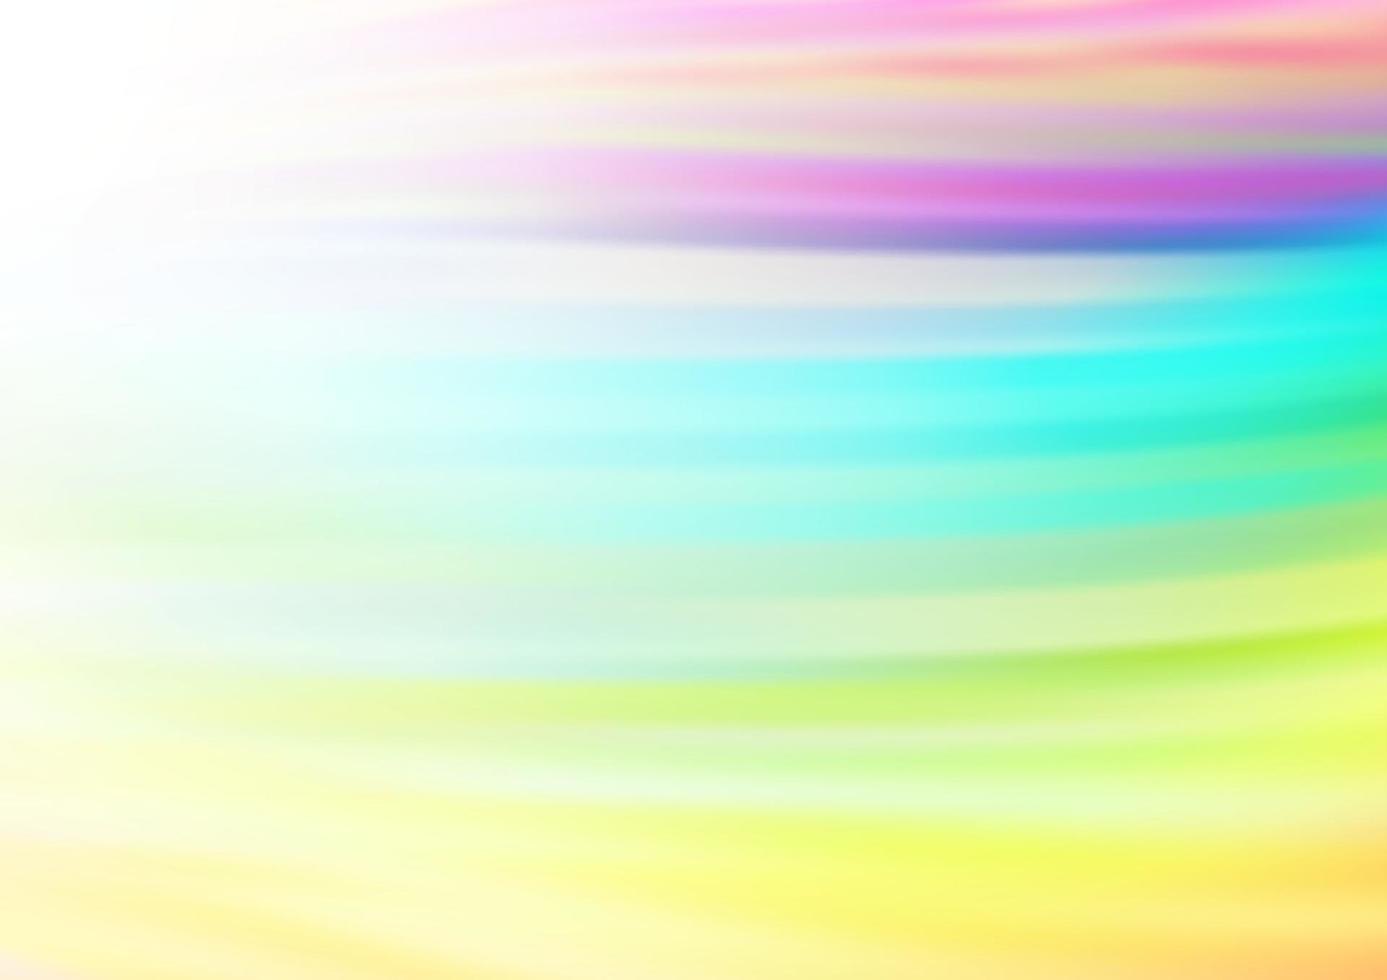 luz multicolorida, modelo de vetor de arco-íris com formas líquidas.